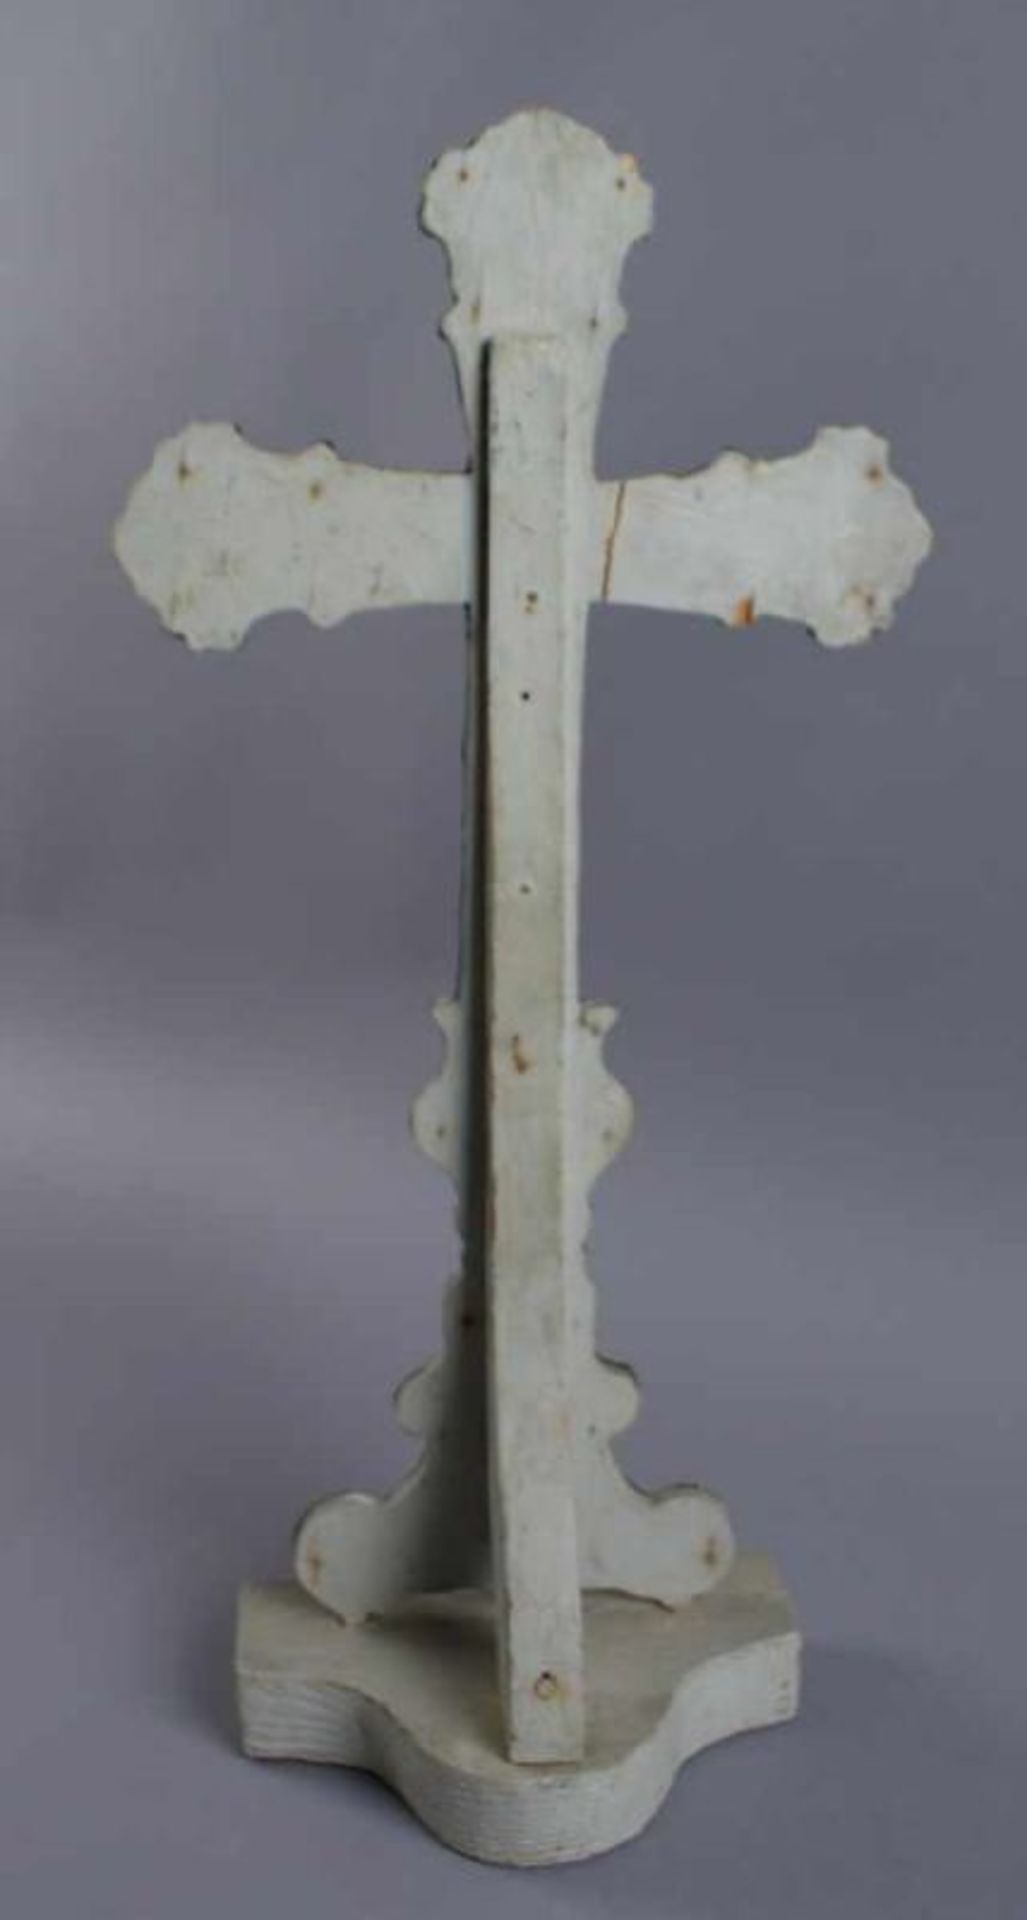 Grosses Standkreuz aus getriebenem Metall, auf Holzkorpus angebracht, H 49 cm 20.17 % buyer's - Bild 5 aus 5